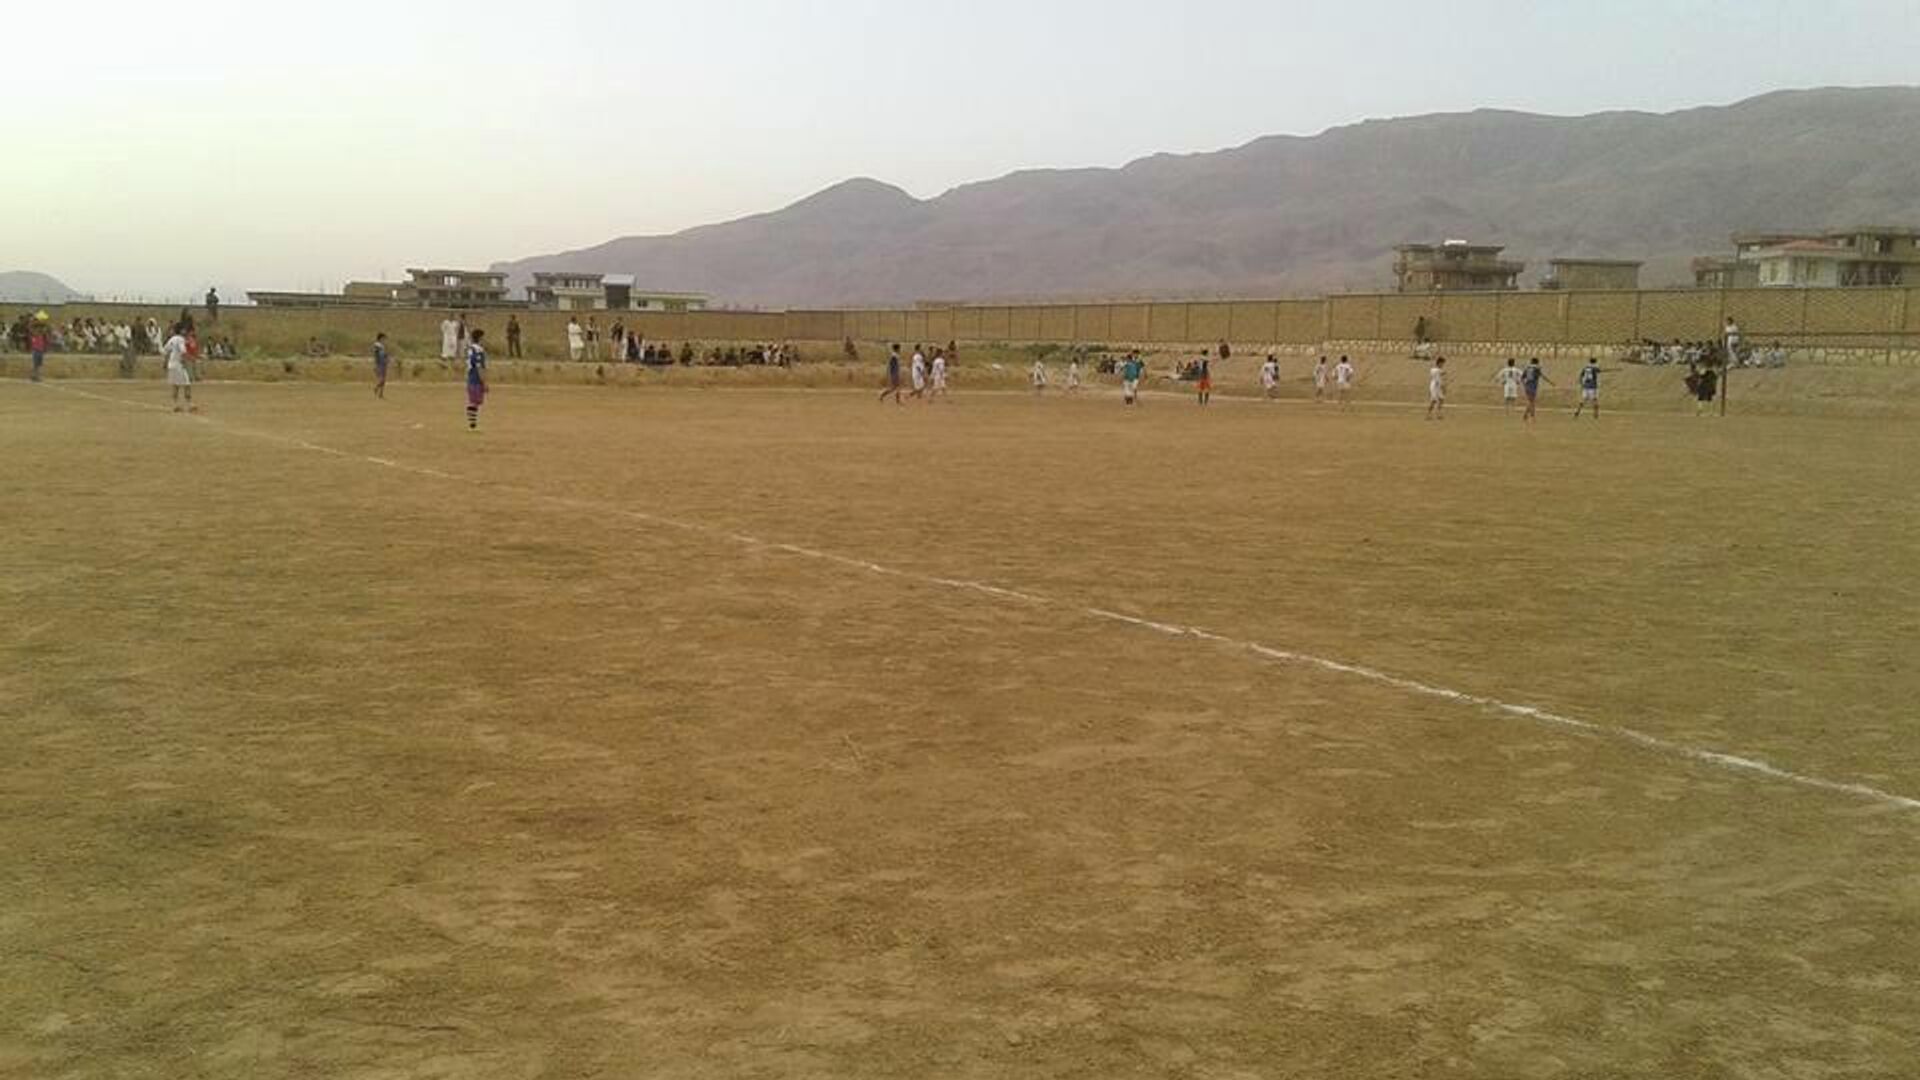  طالبان ورزش برای افراد زیر ۱۸ سال را در غزنی ممنوع کردند - اسپوتنیک افغانستان  , 1920, 17.05.2022